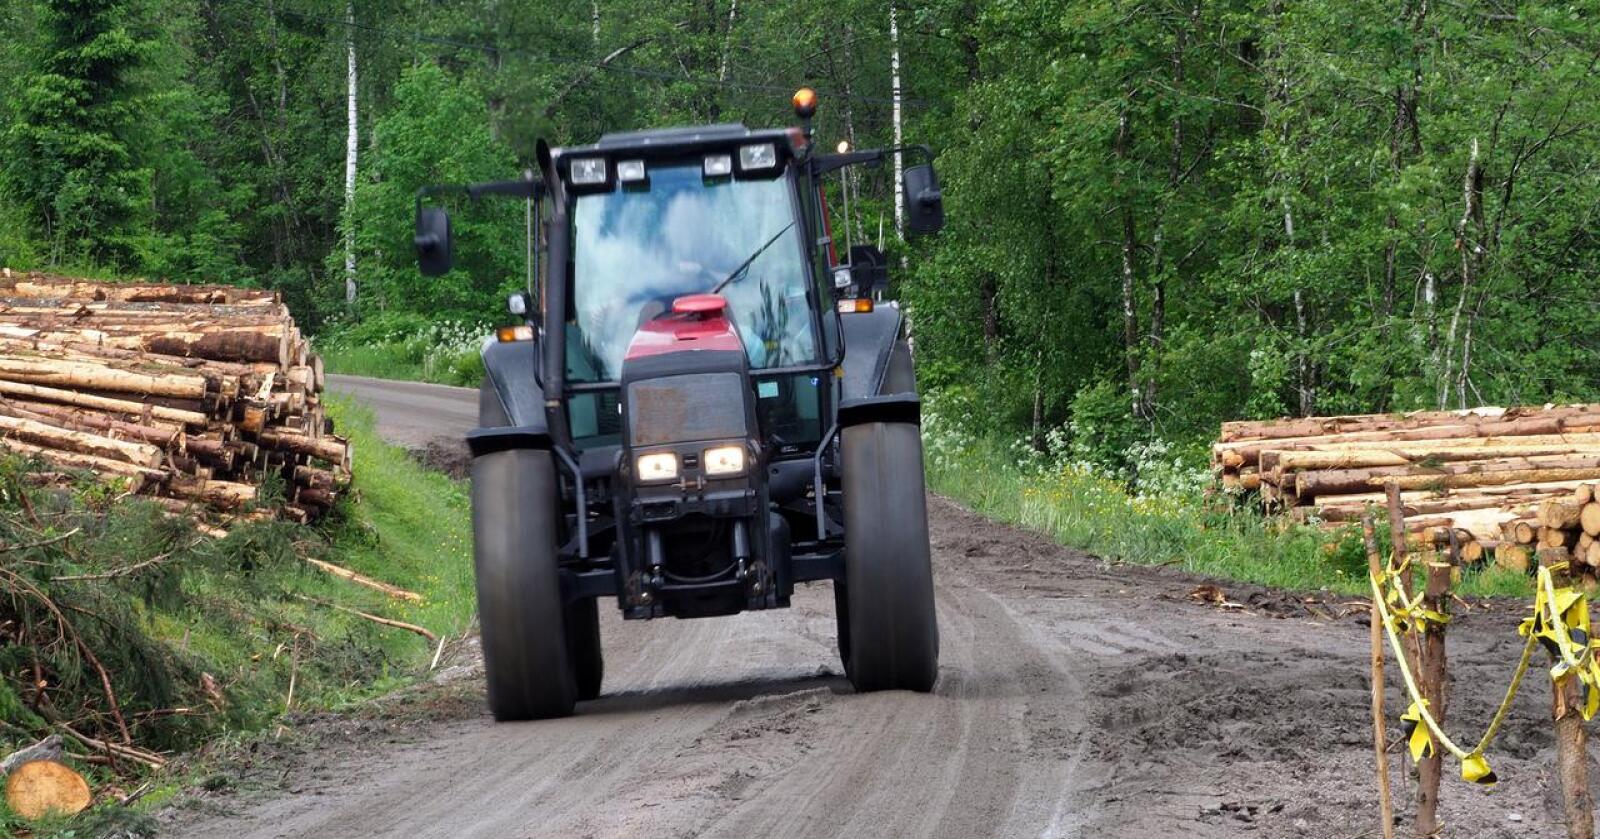 Miljødirektoratet har levert forslag om krav til biodrivstoff for traktorer og anleggsmaskiner på høring. Foto: Siri Juell Rasmussen